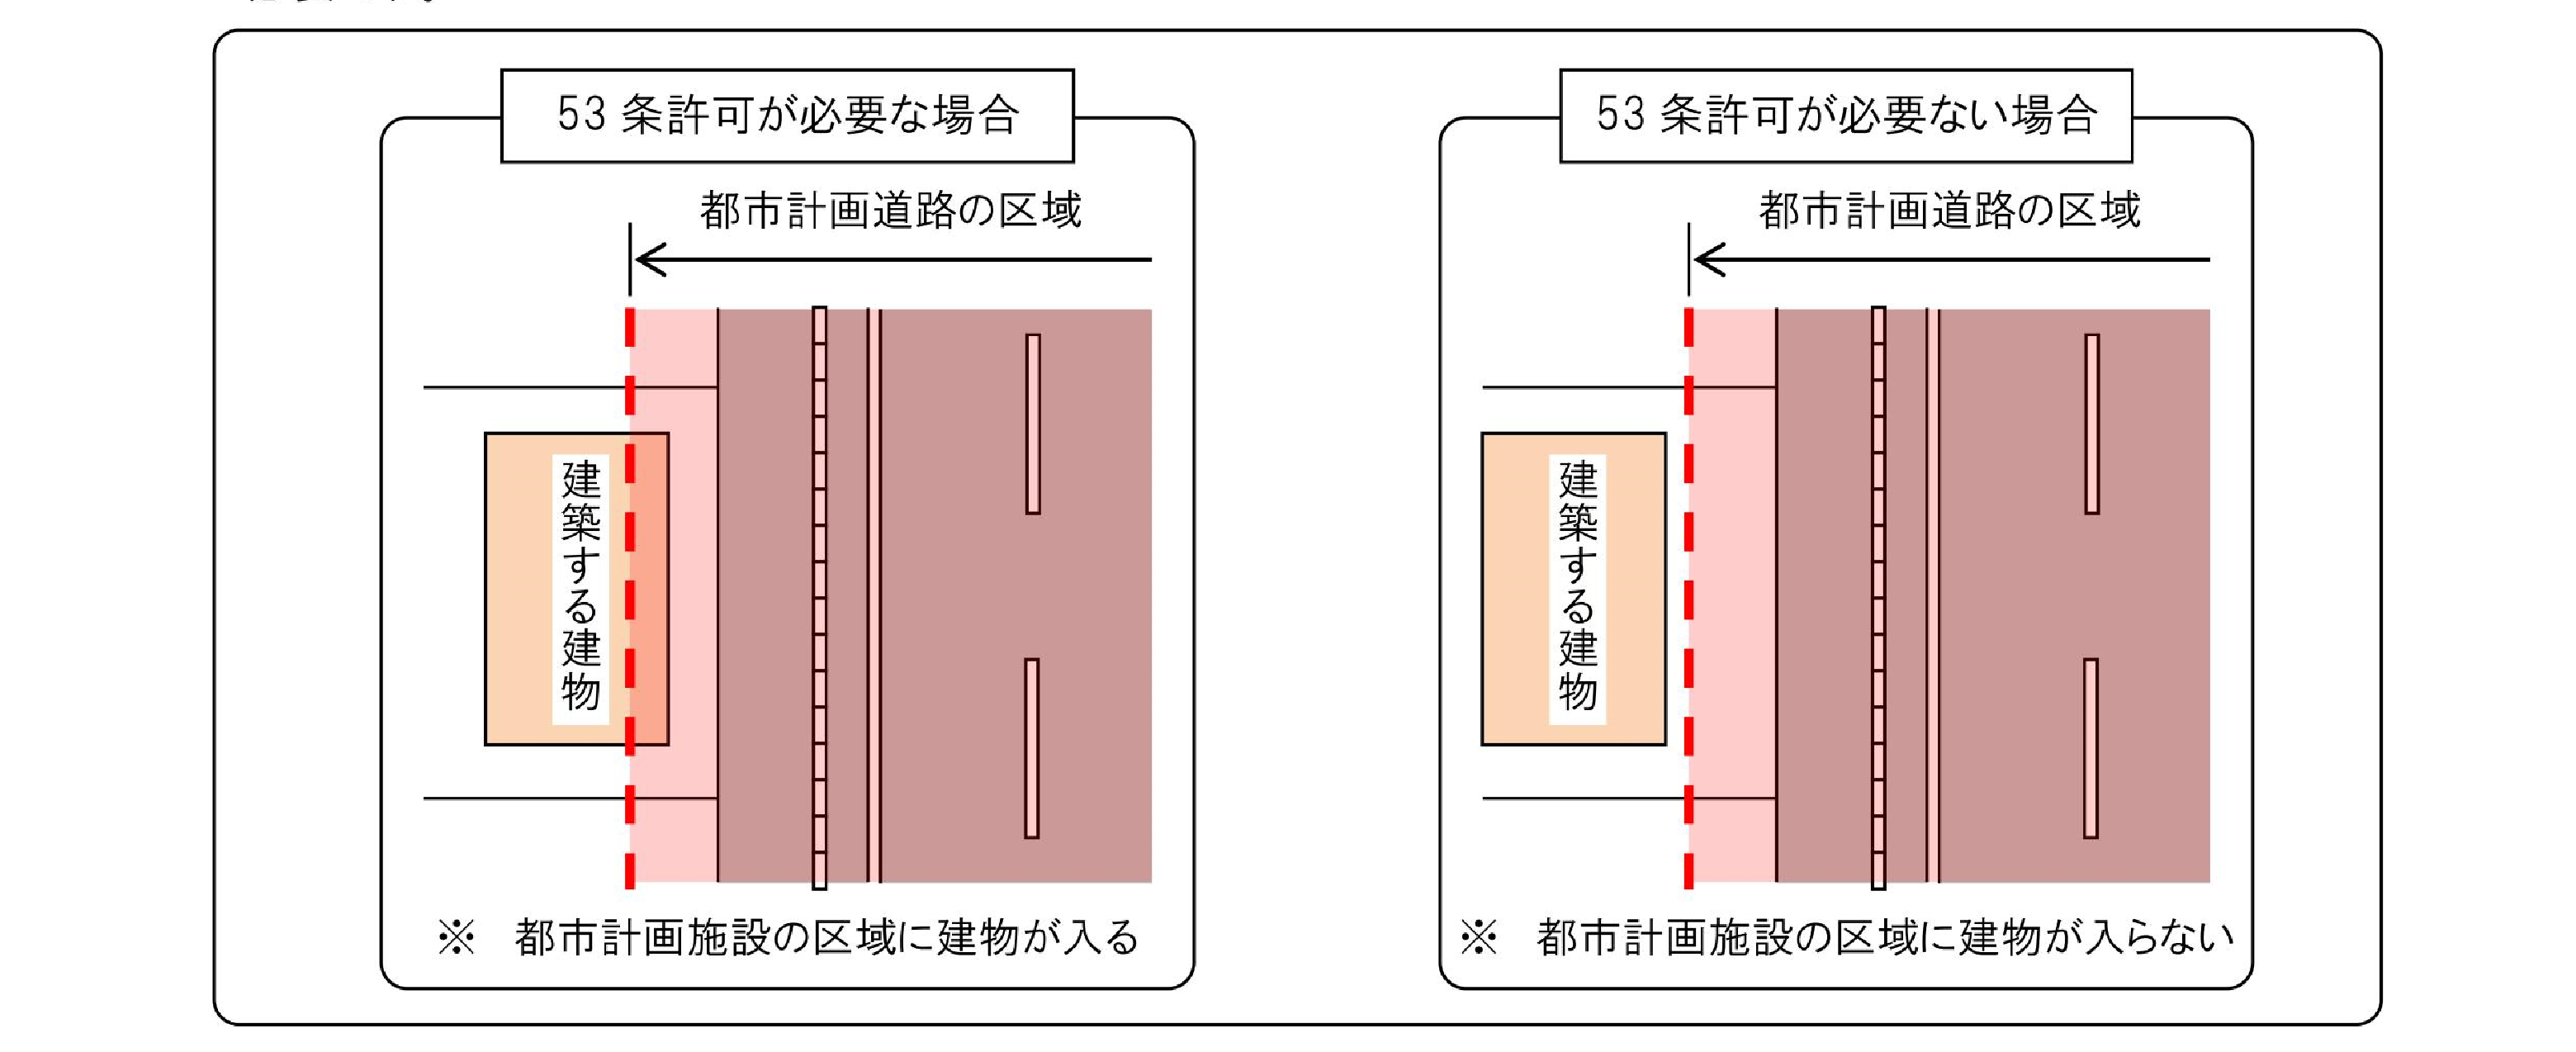 都市計画法第53条の許可について - 北海道千歳市公式ホームページ